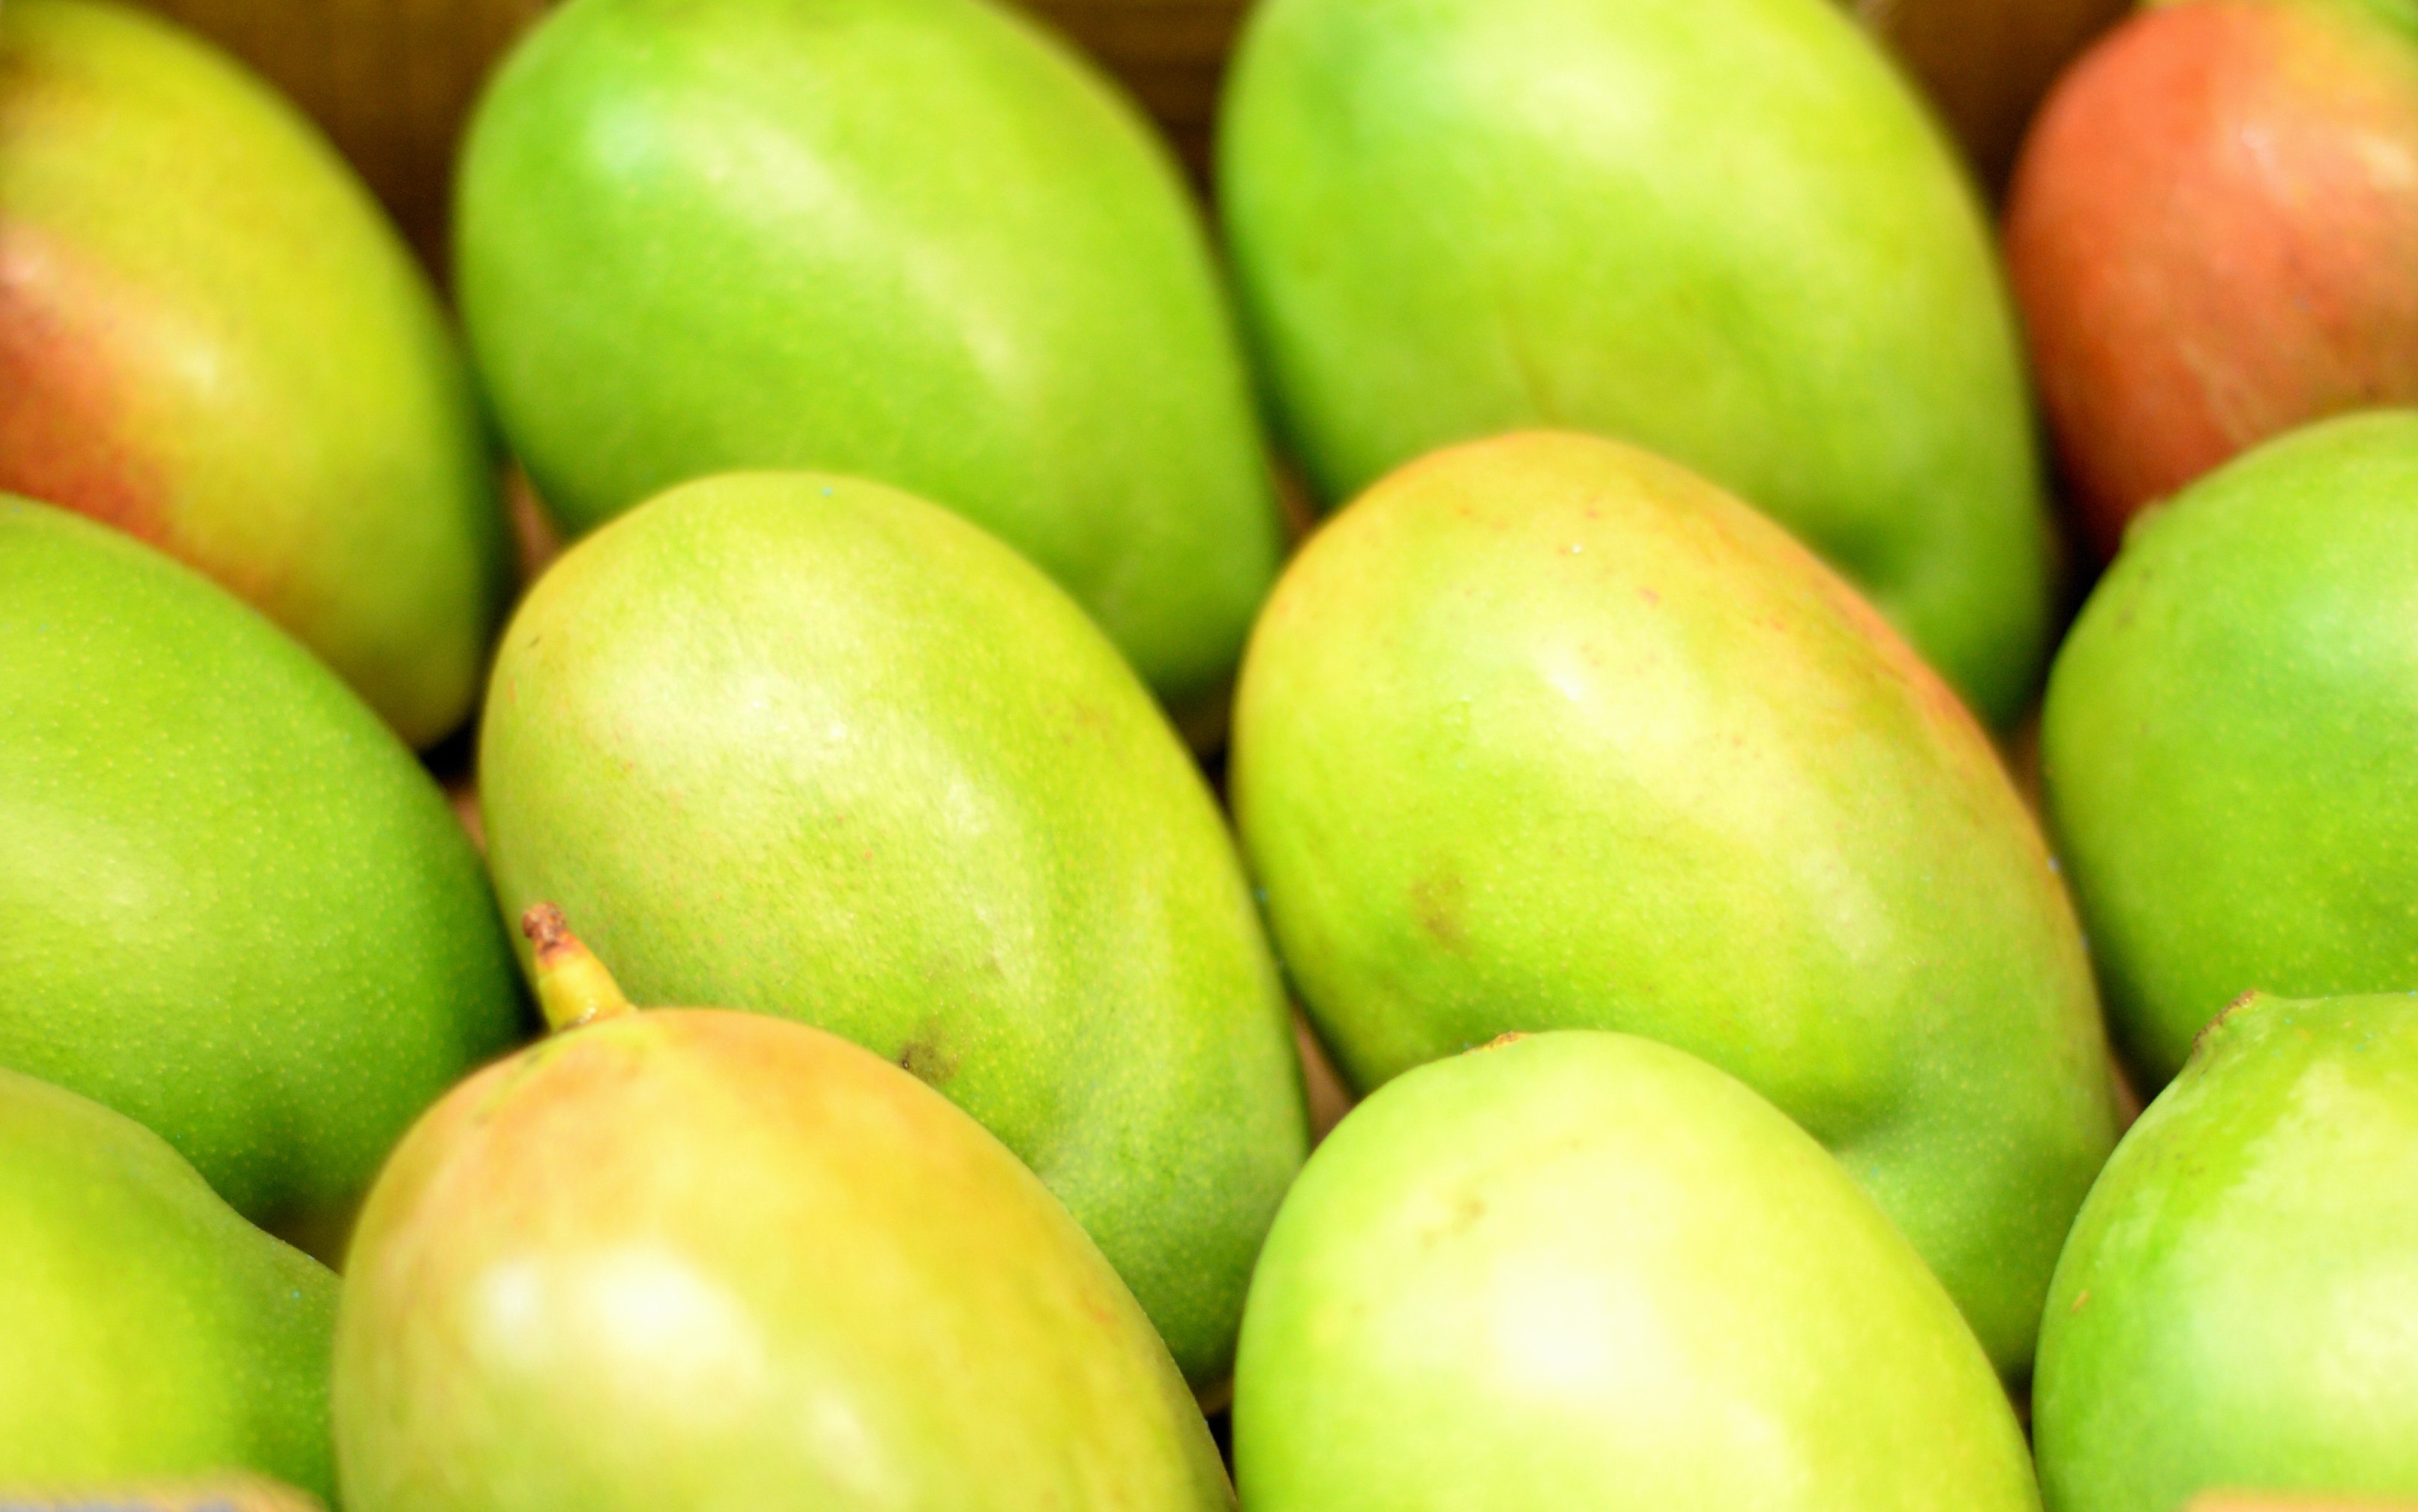 果椗形狀較圓潤的芒果一般甜度較高，而果椗較平坦的甜度較低